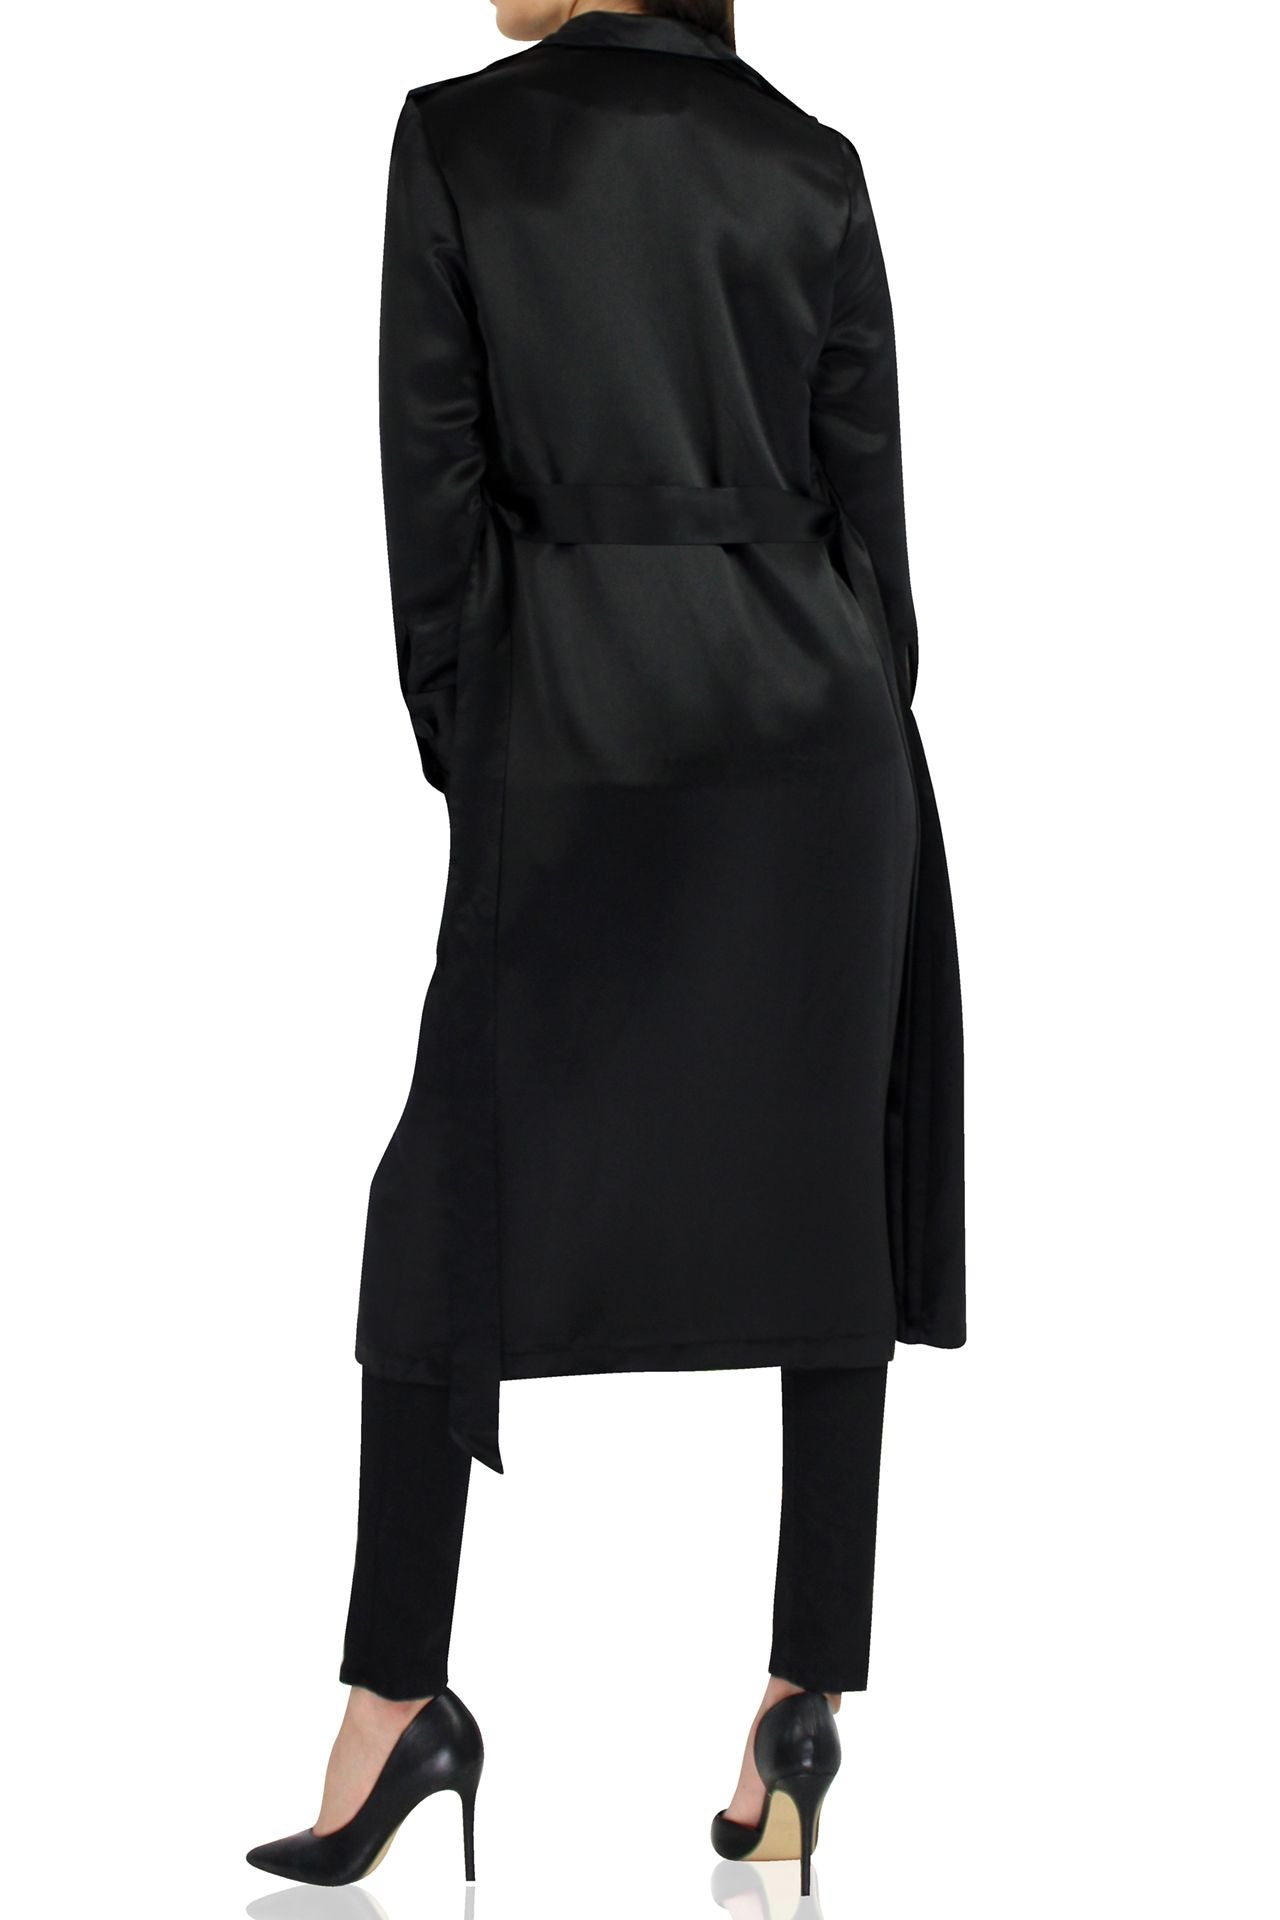 Designer-Belted-Robe-Dress-In-Black-By-Kyle.